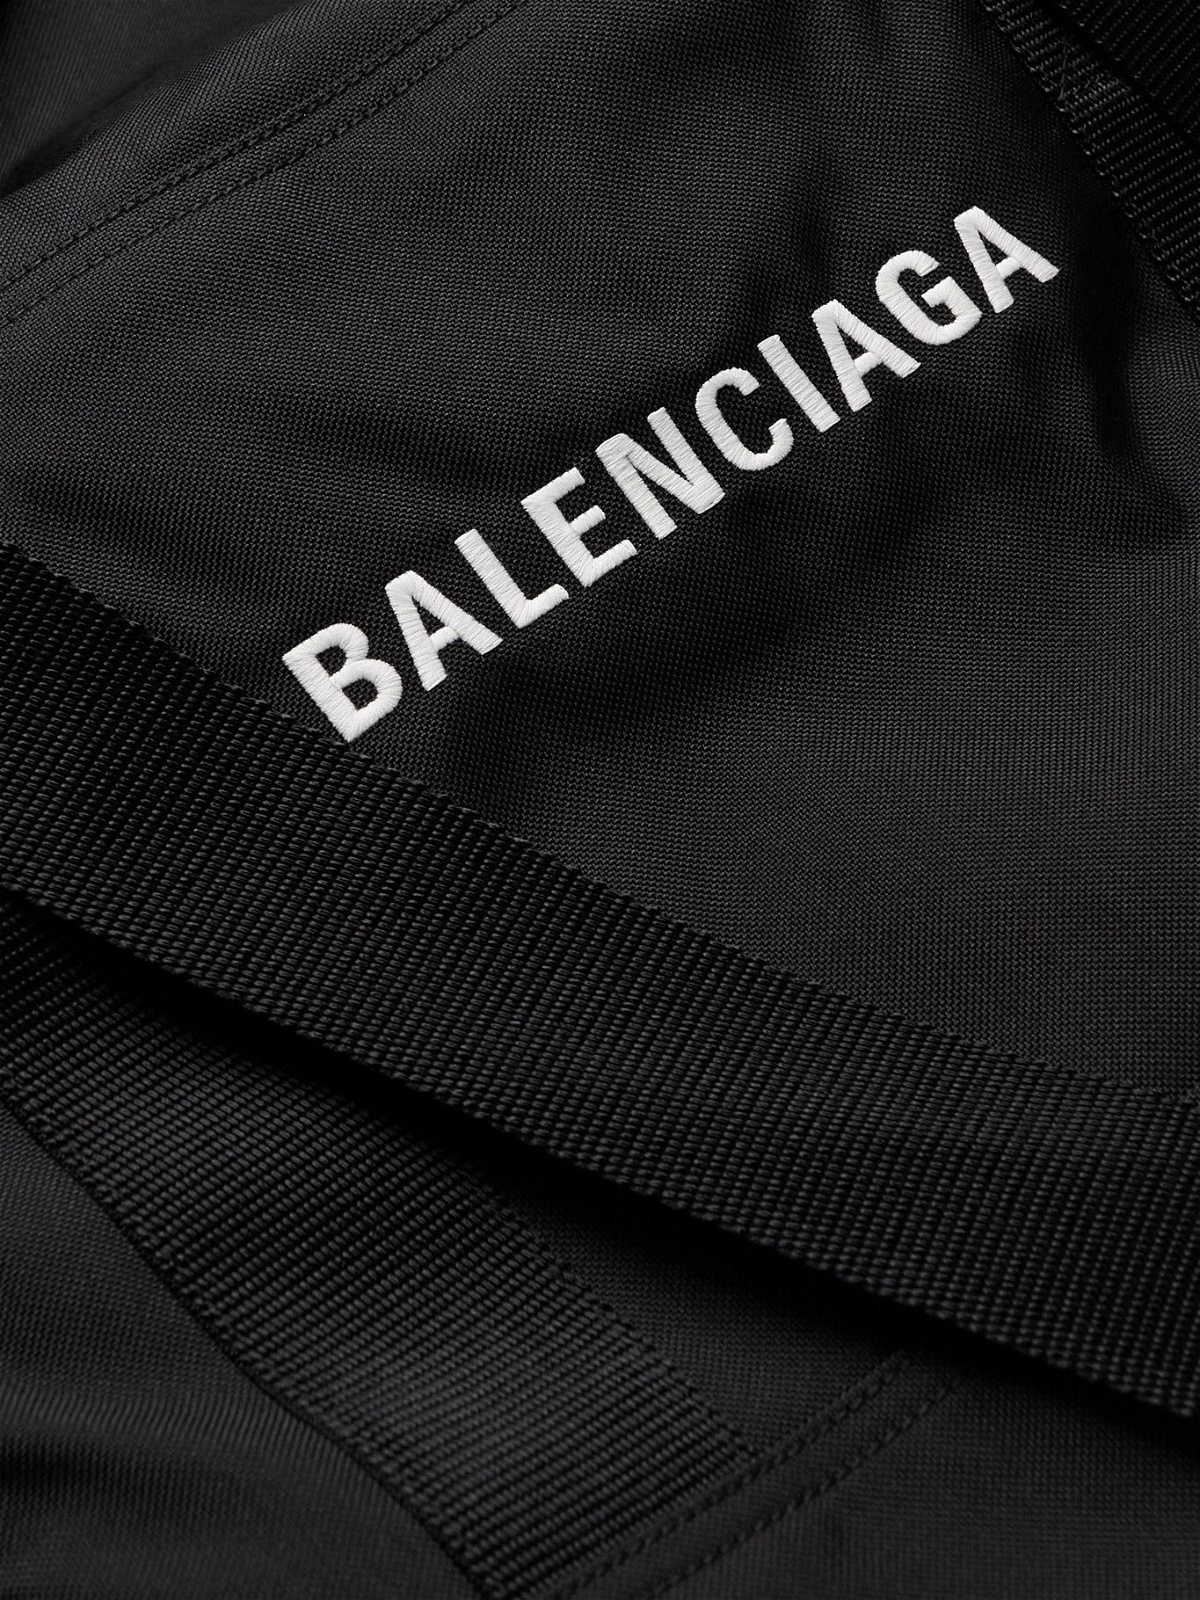 Balenciaga - Convertible Canvas Gym Bag Jacket - Black Balenciaga